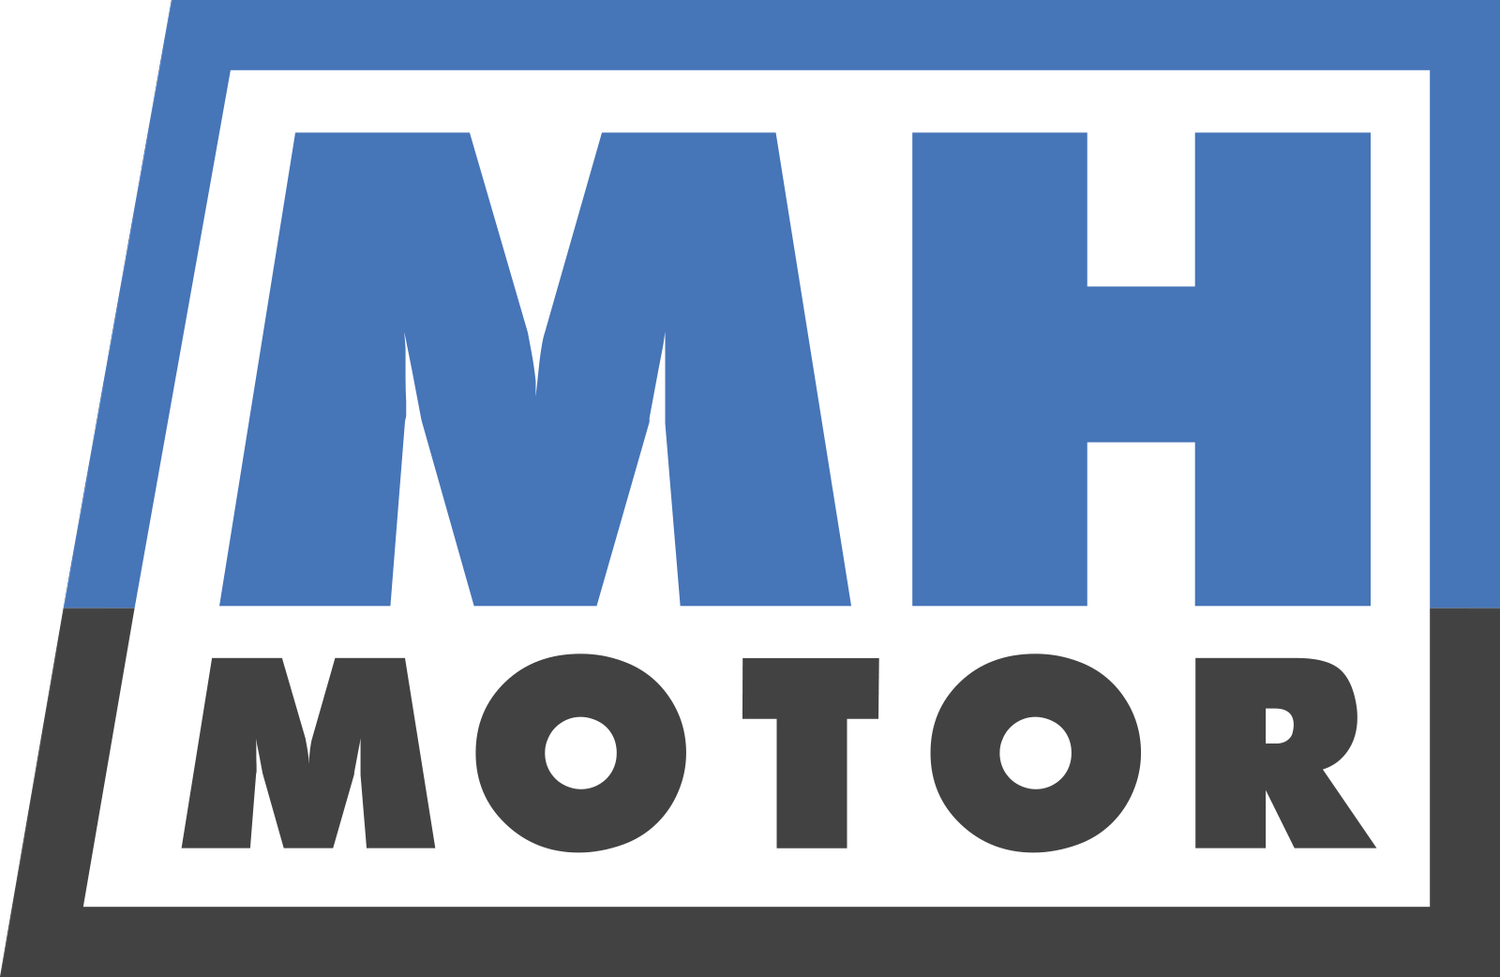 MH-motor